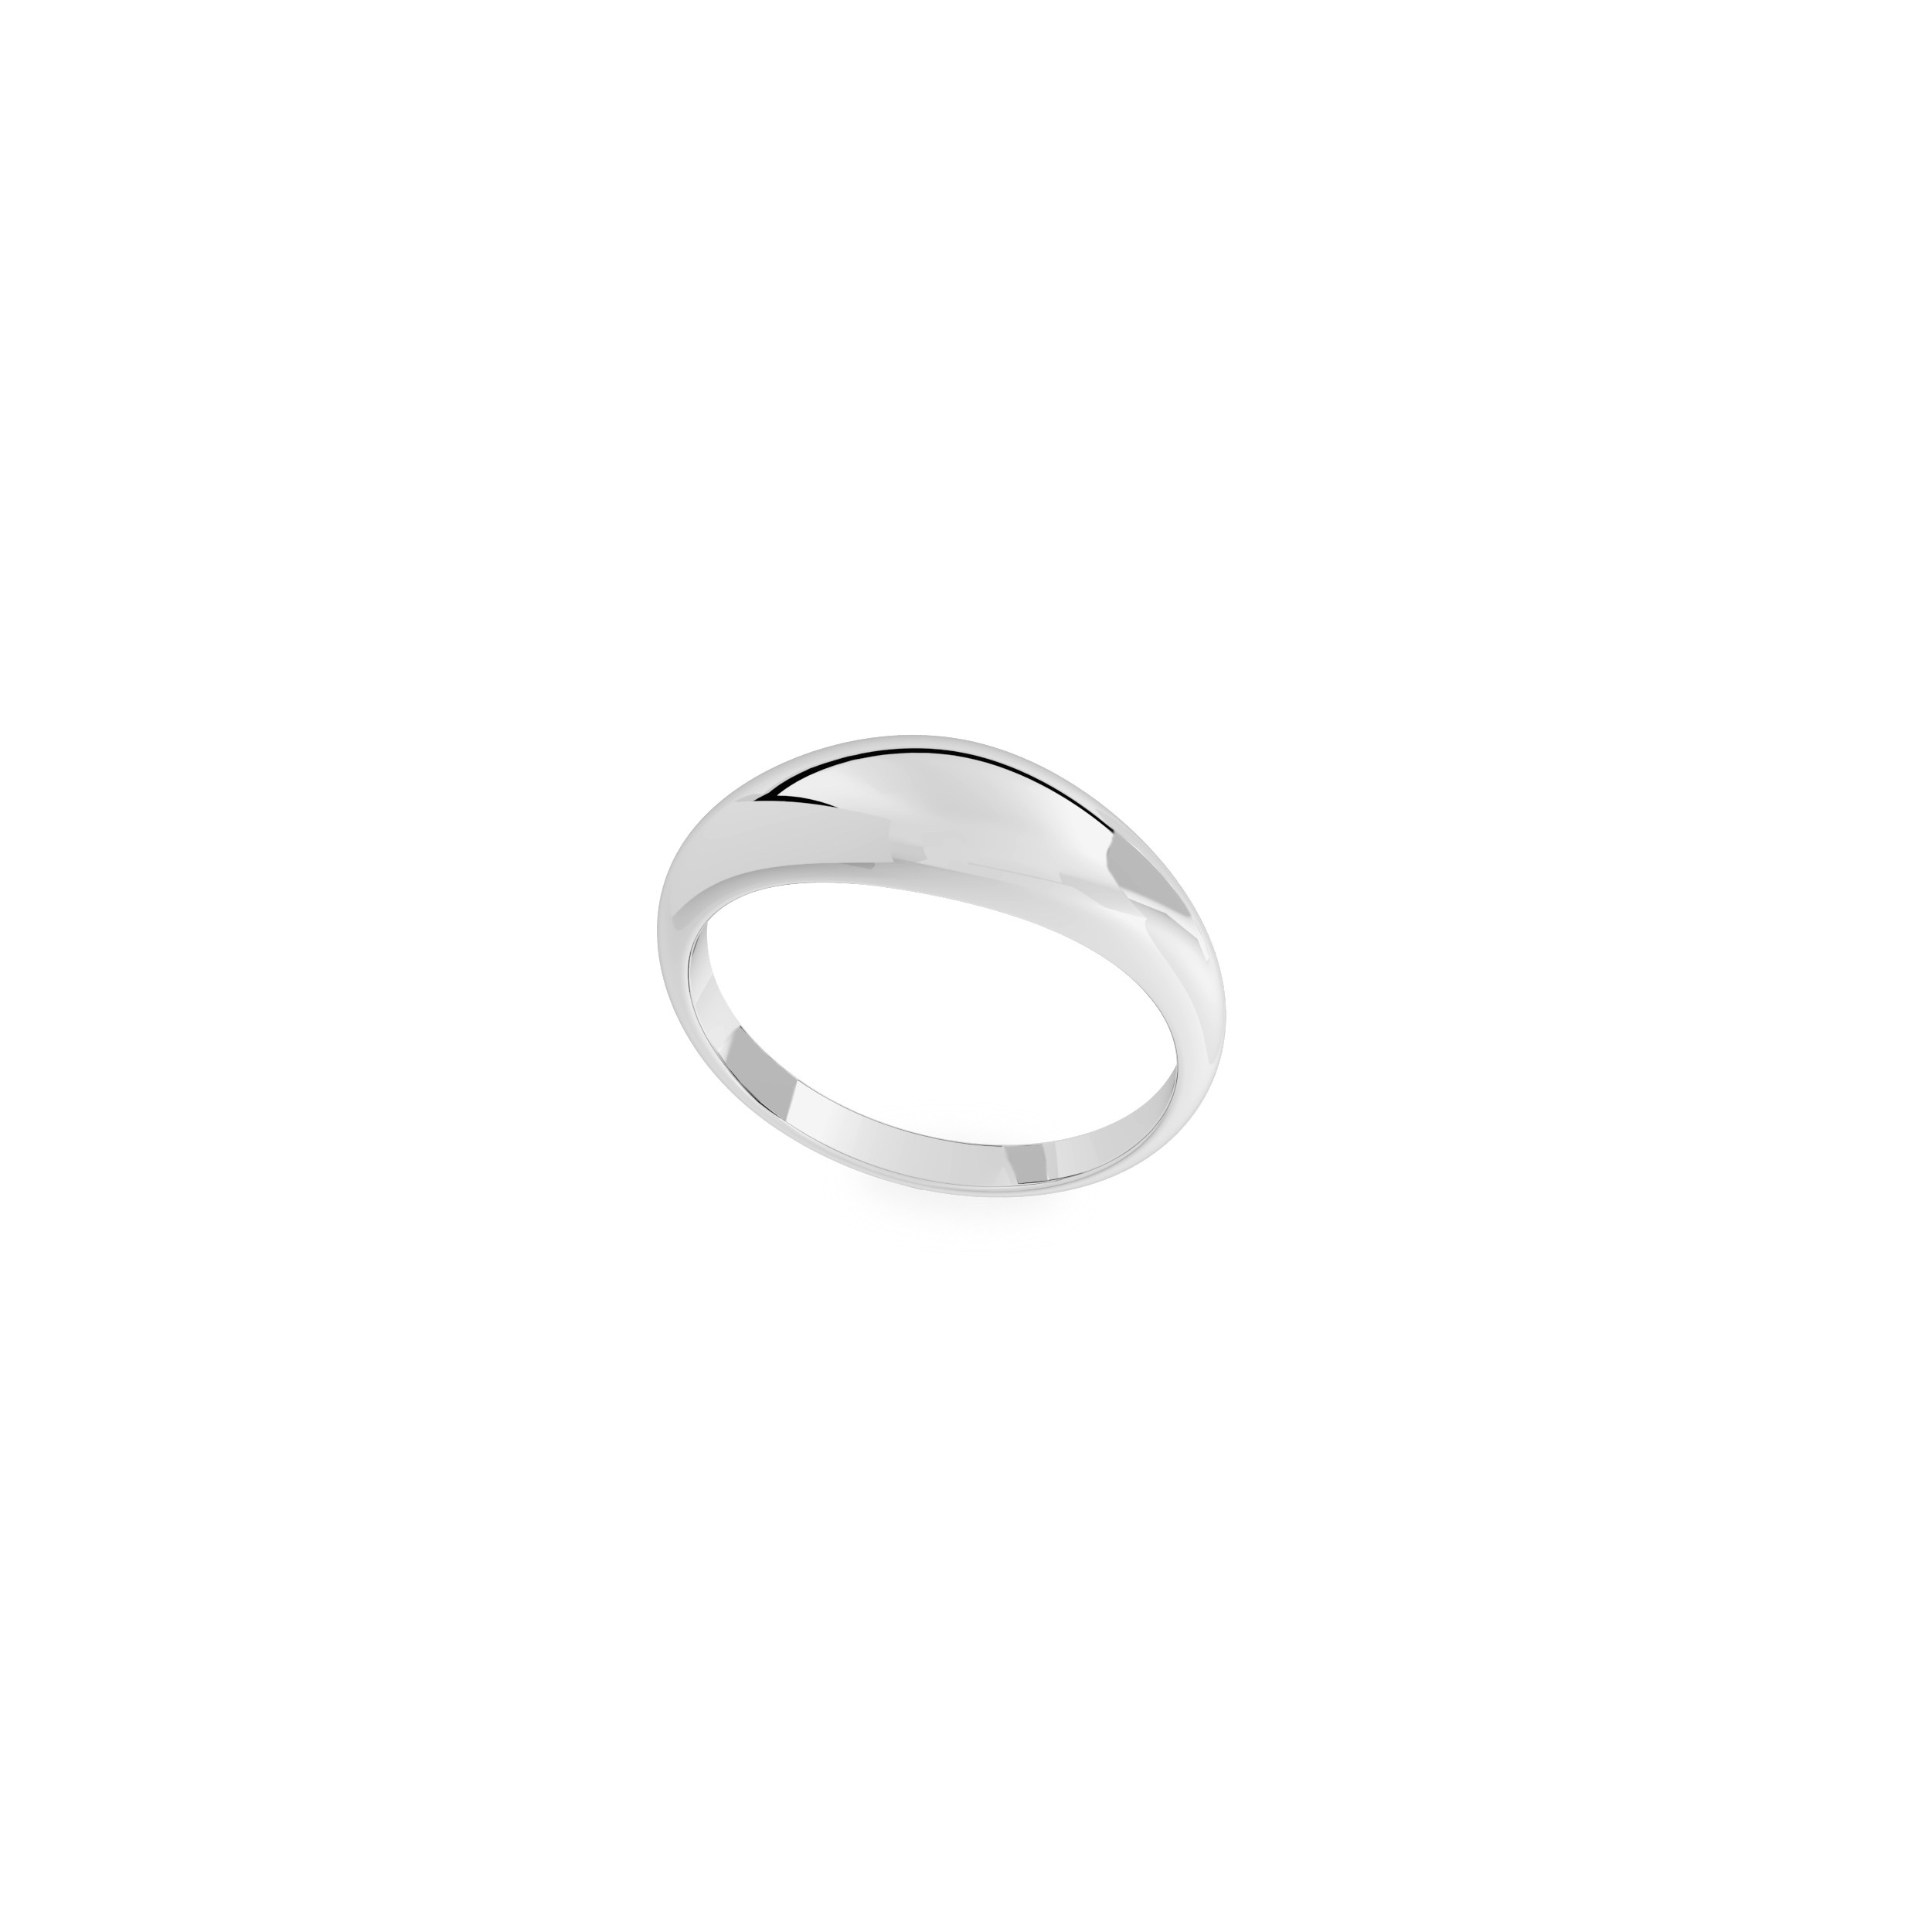 Delikatny owalny pierścień, srebro 925